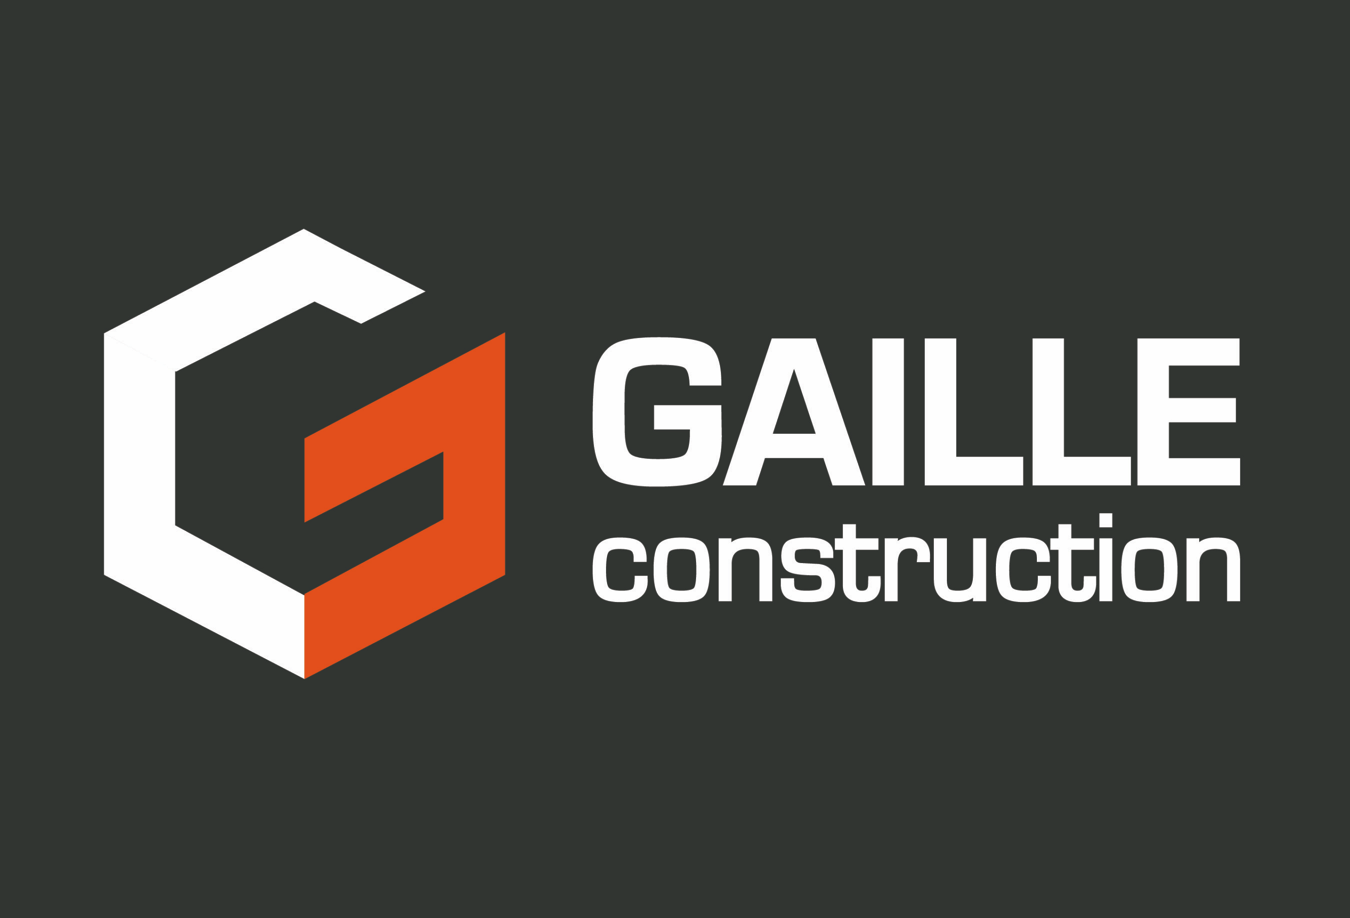 Gaille Construction SA